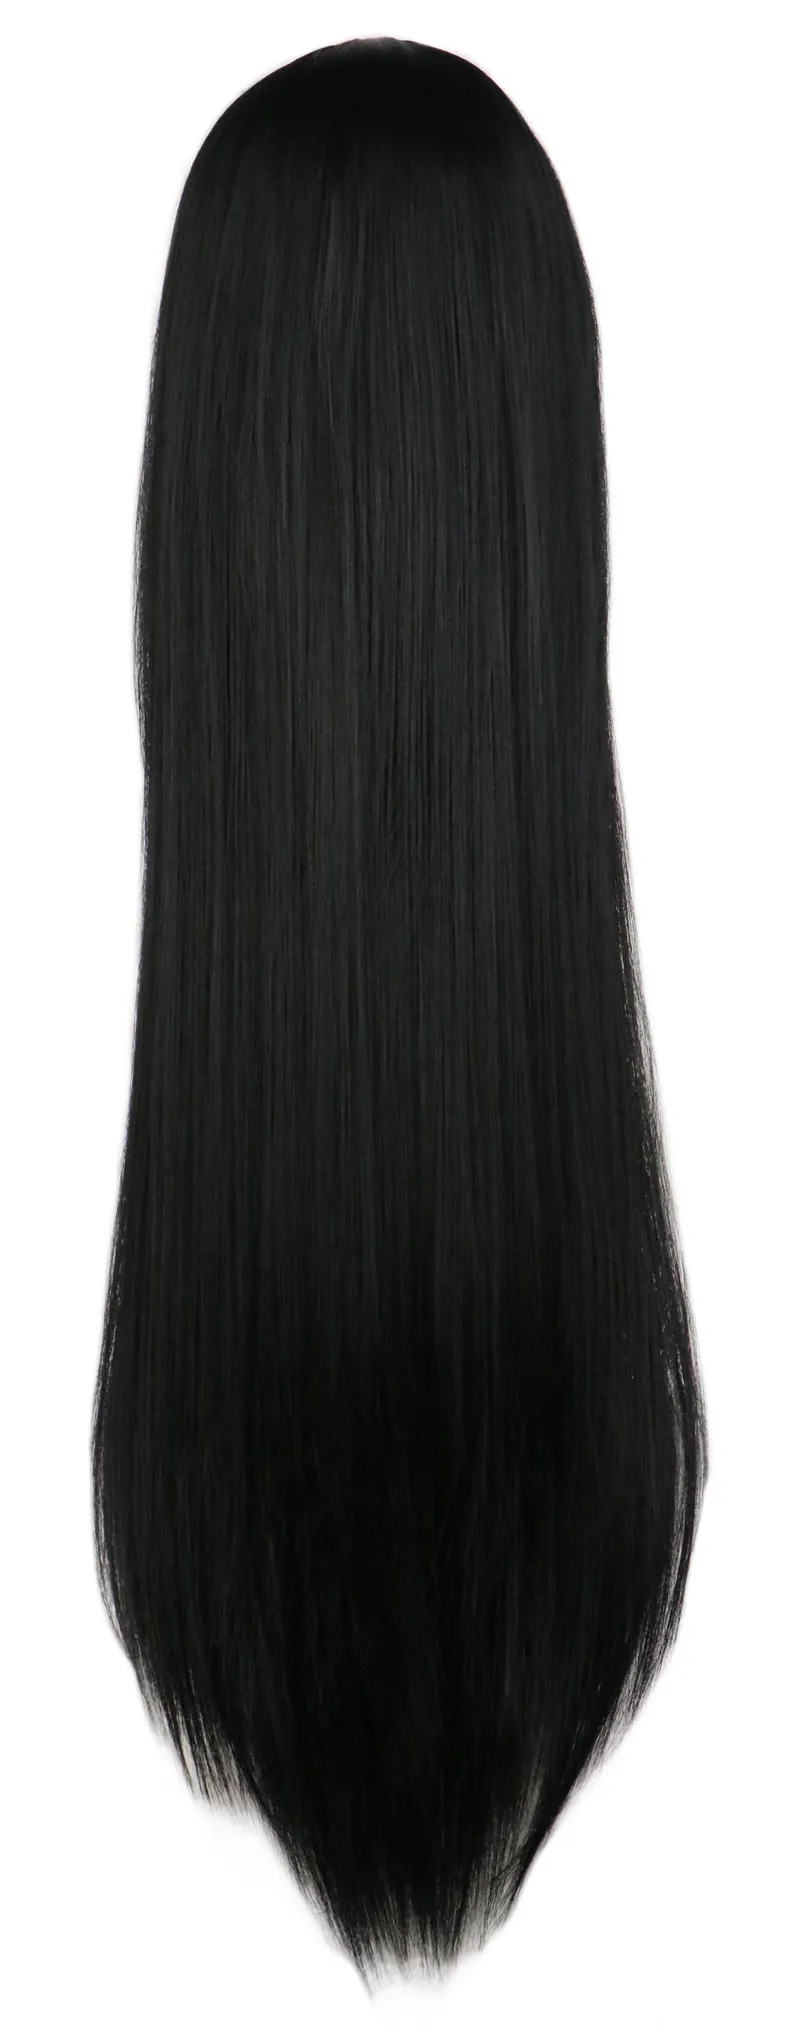 QQXCAIW, длинные прямые парики для косплея, черные, фиолетовые, розовые, голубые, серебристые, серые, светлые, белые, оранжевые, коричневые, 80 см, синтетические волосы, парики